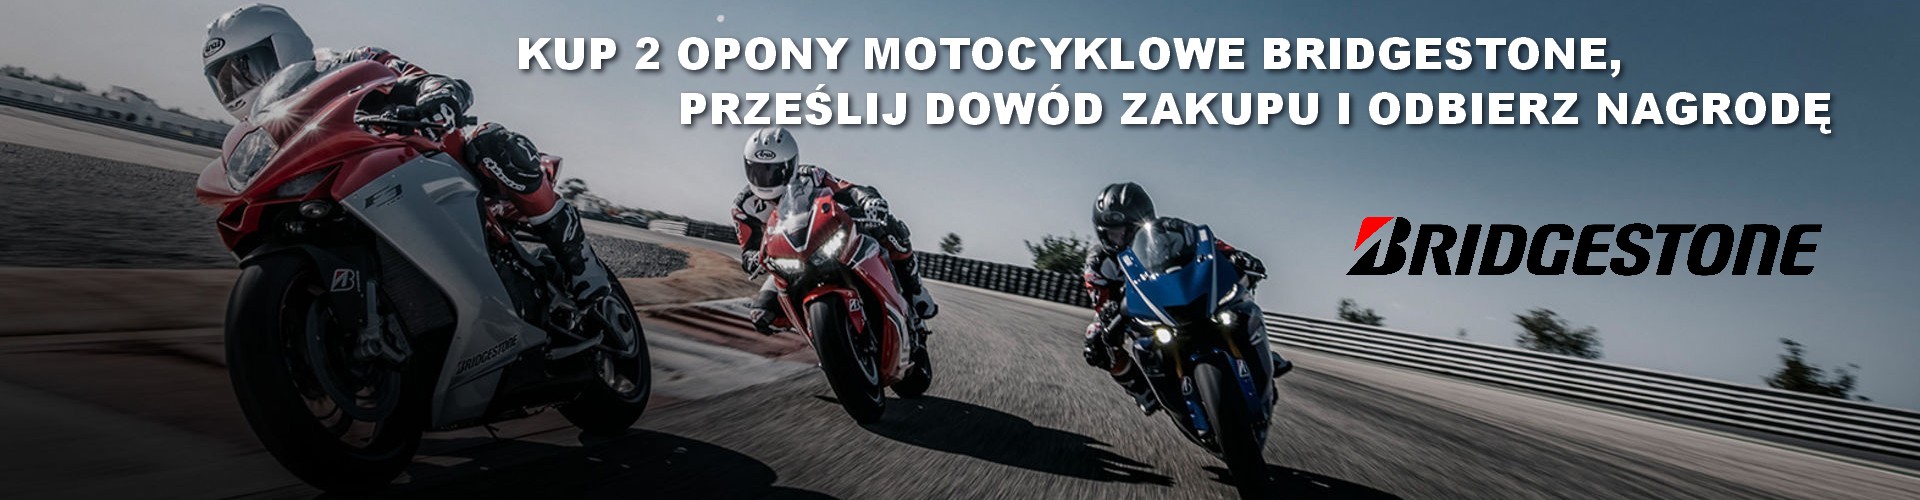 https://oponyalbert.pl/bridgestone-kup-2-opony-motocyklowe-i-odbierz-nagrode,1264.html